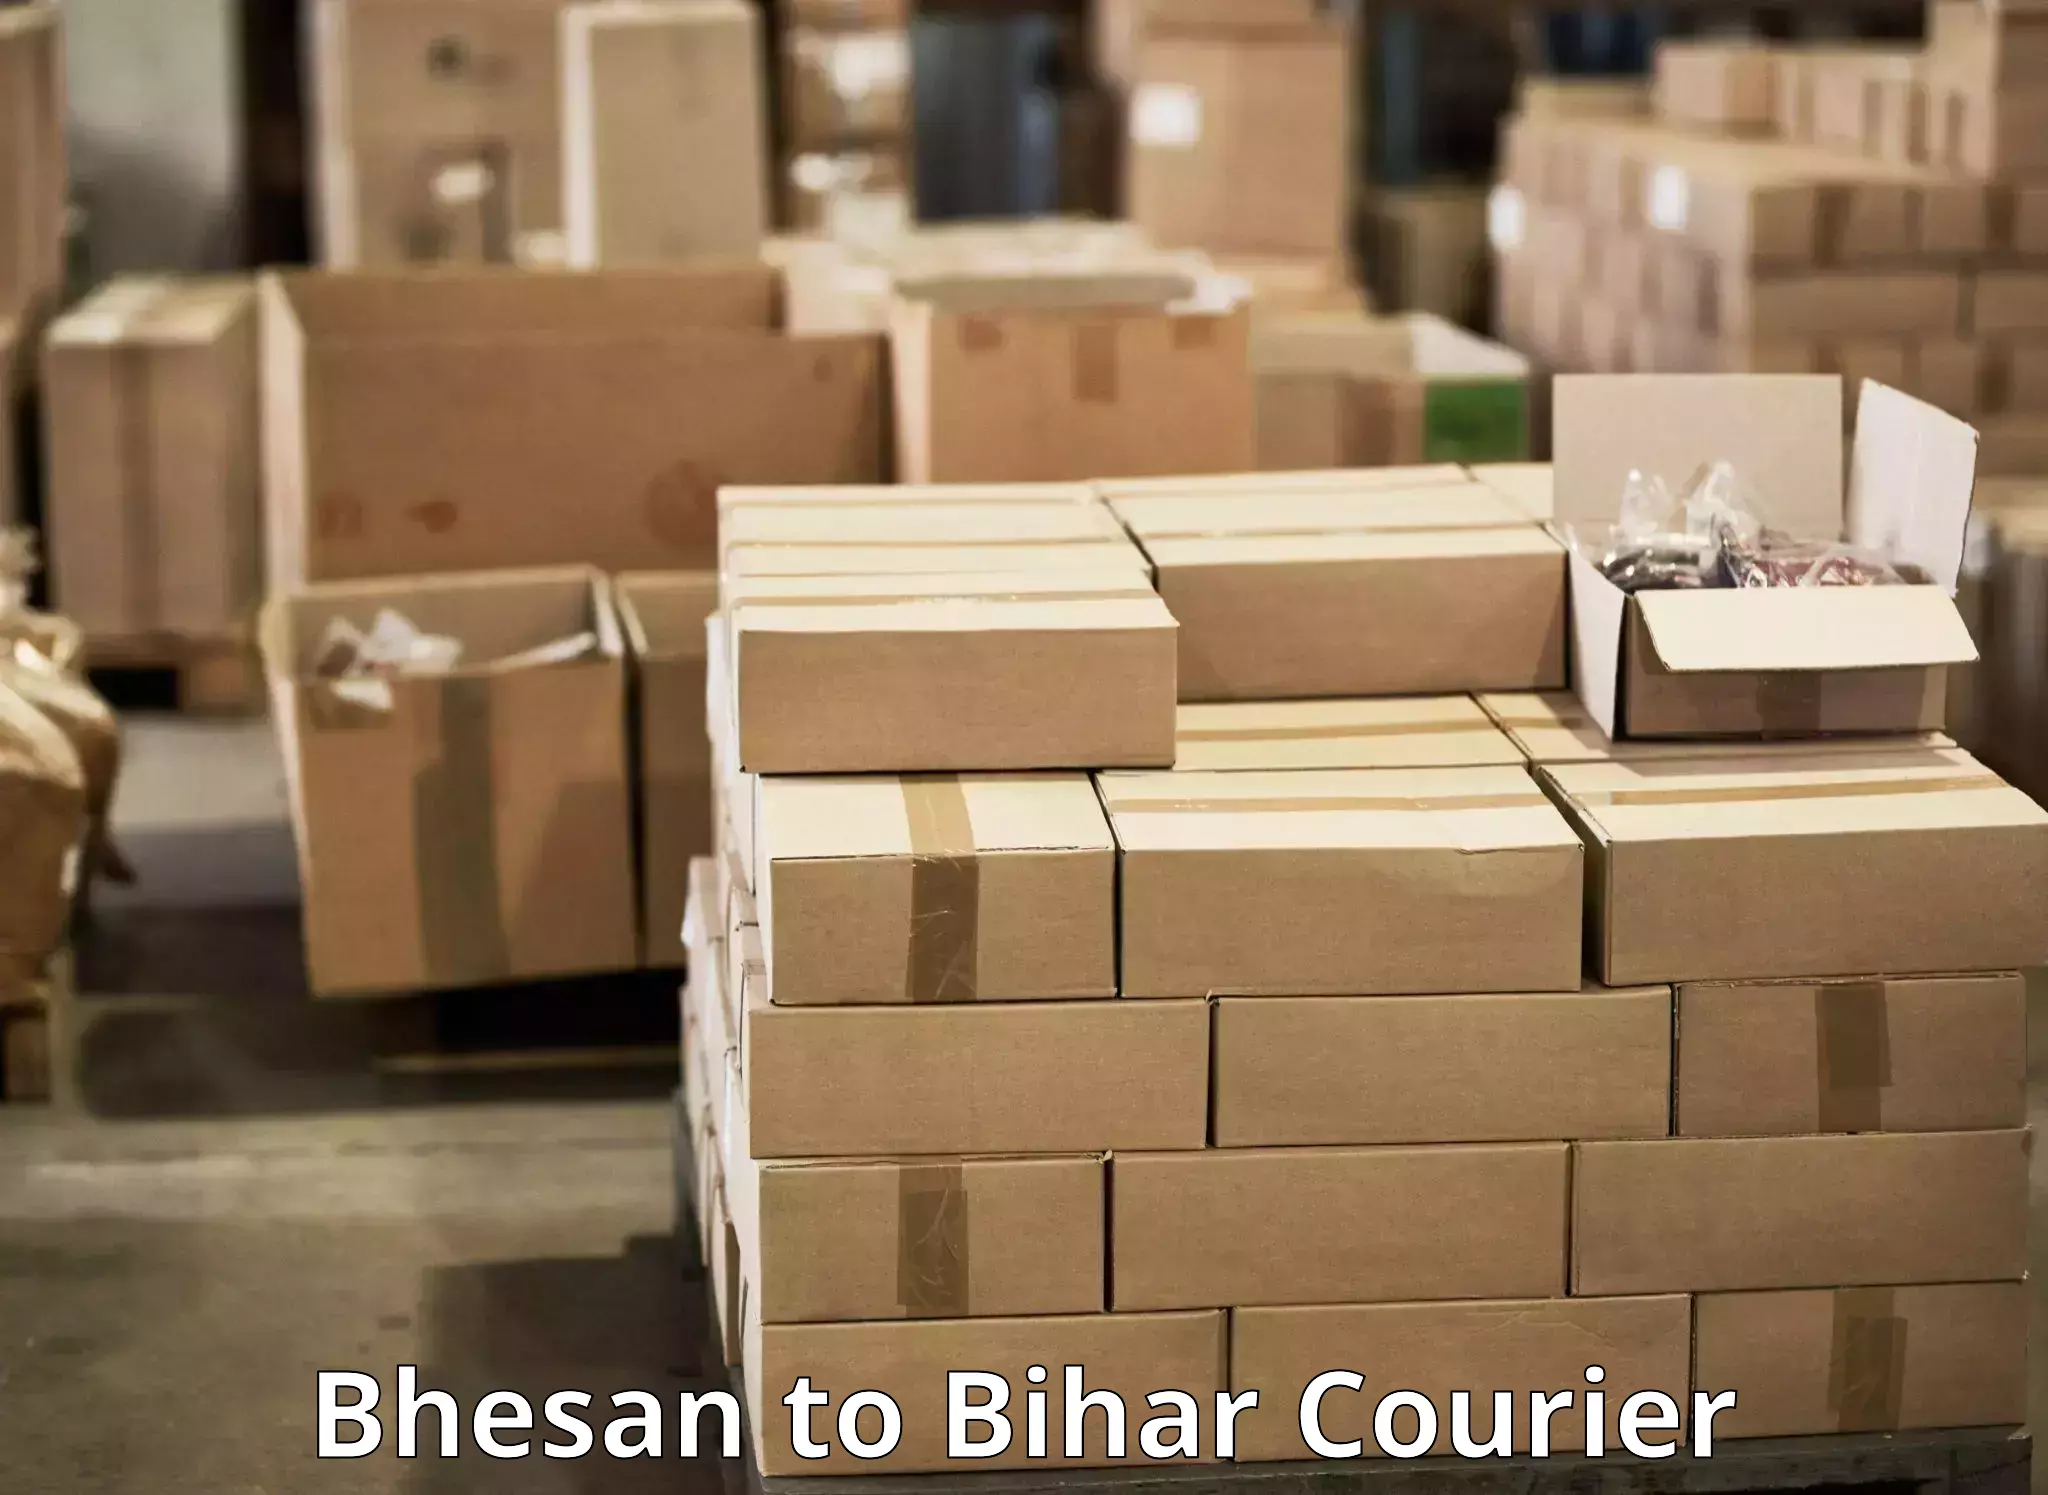 Nationwide courier service Bhesan to Muzaffarpur